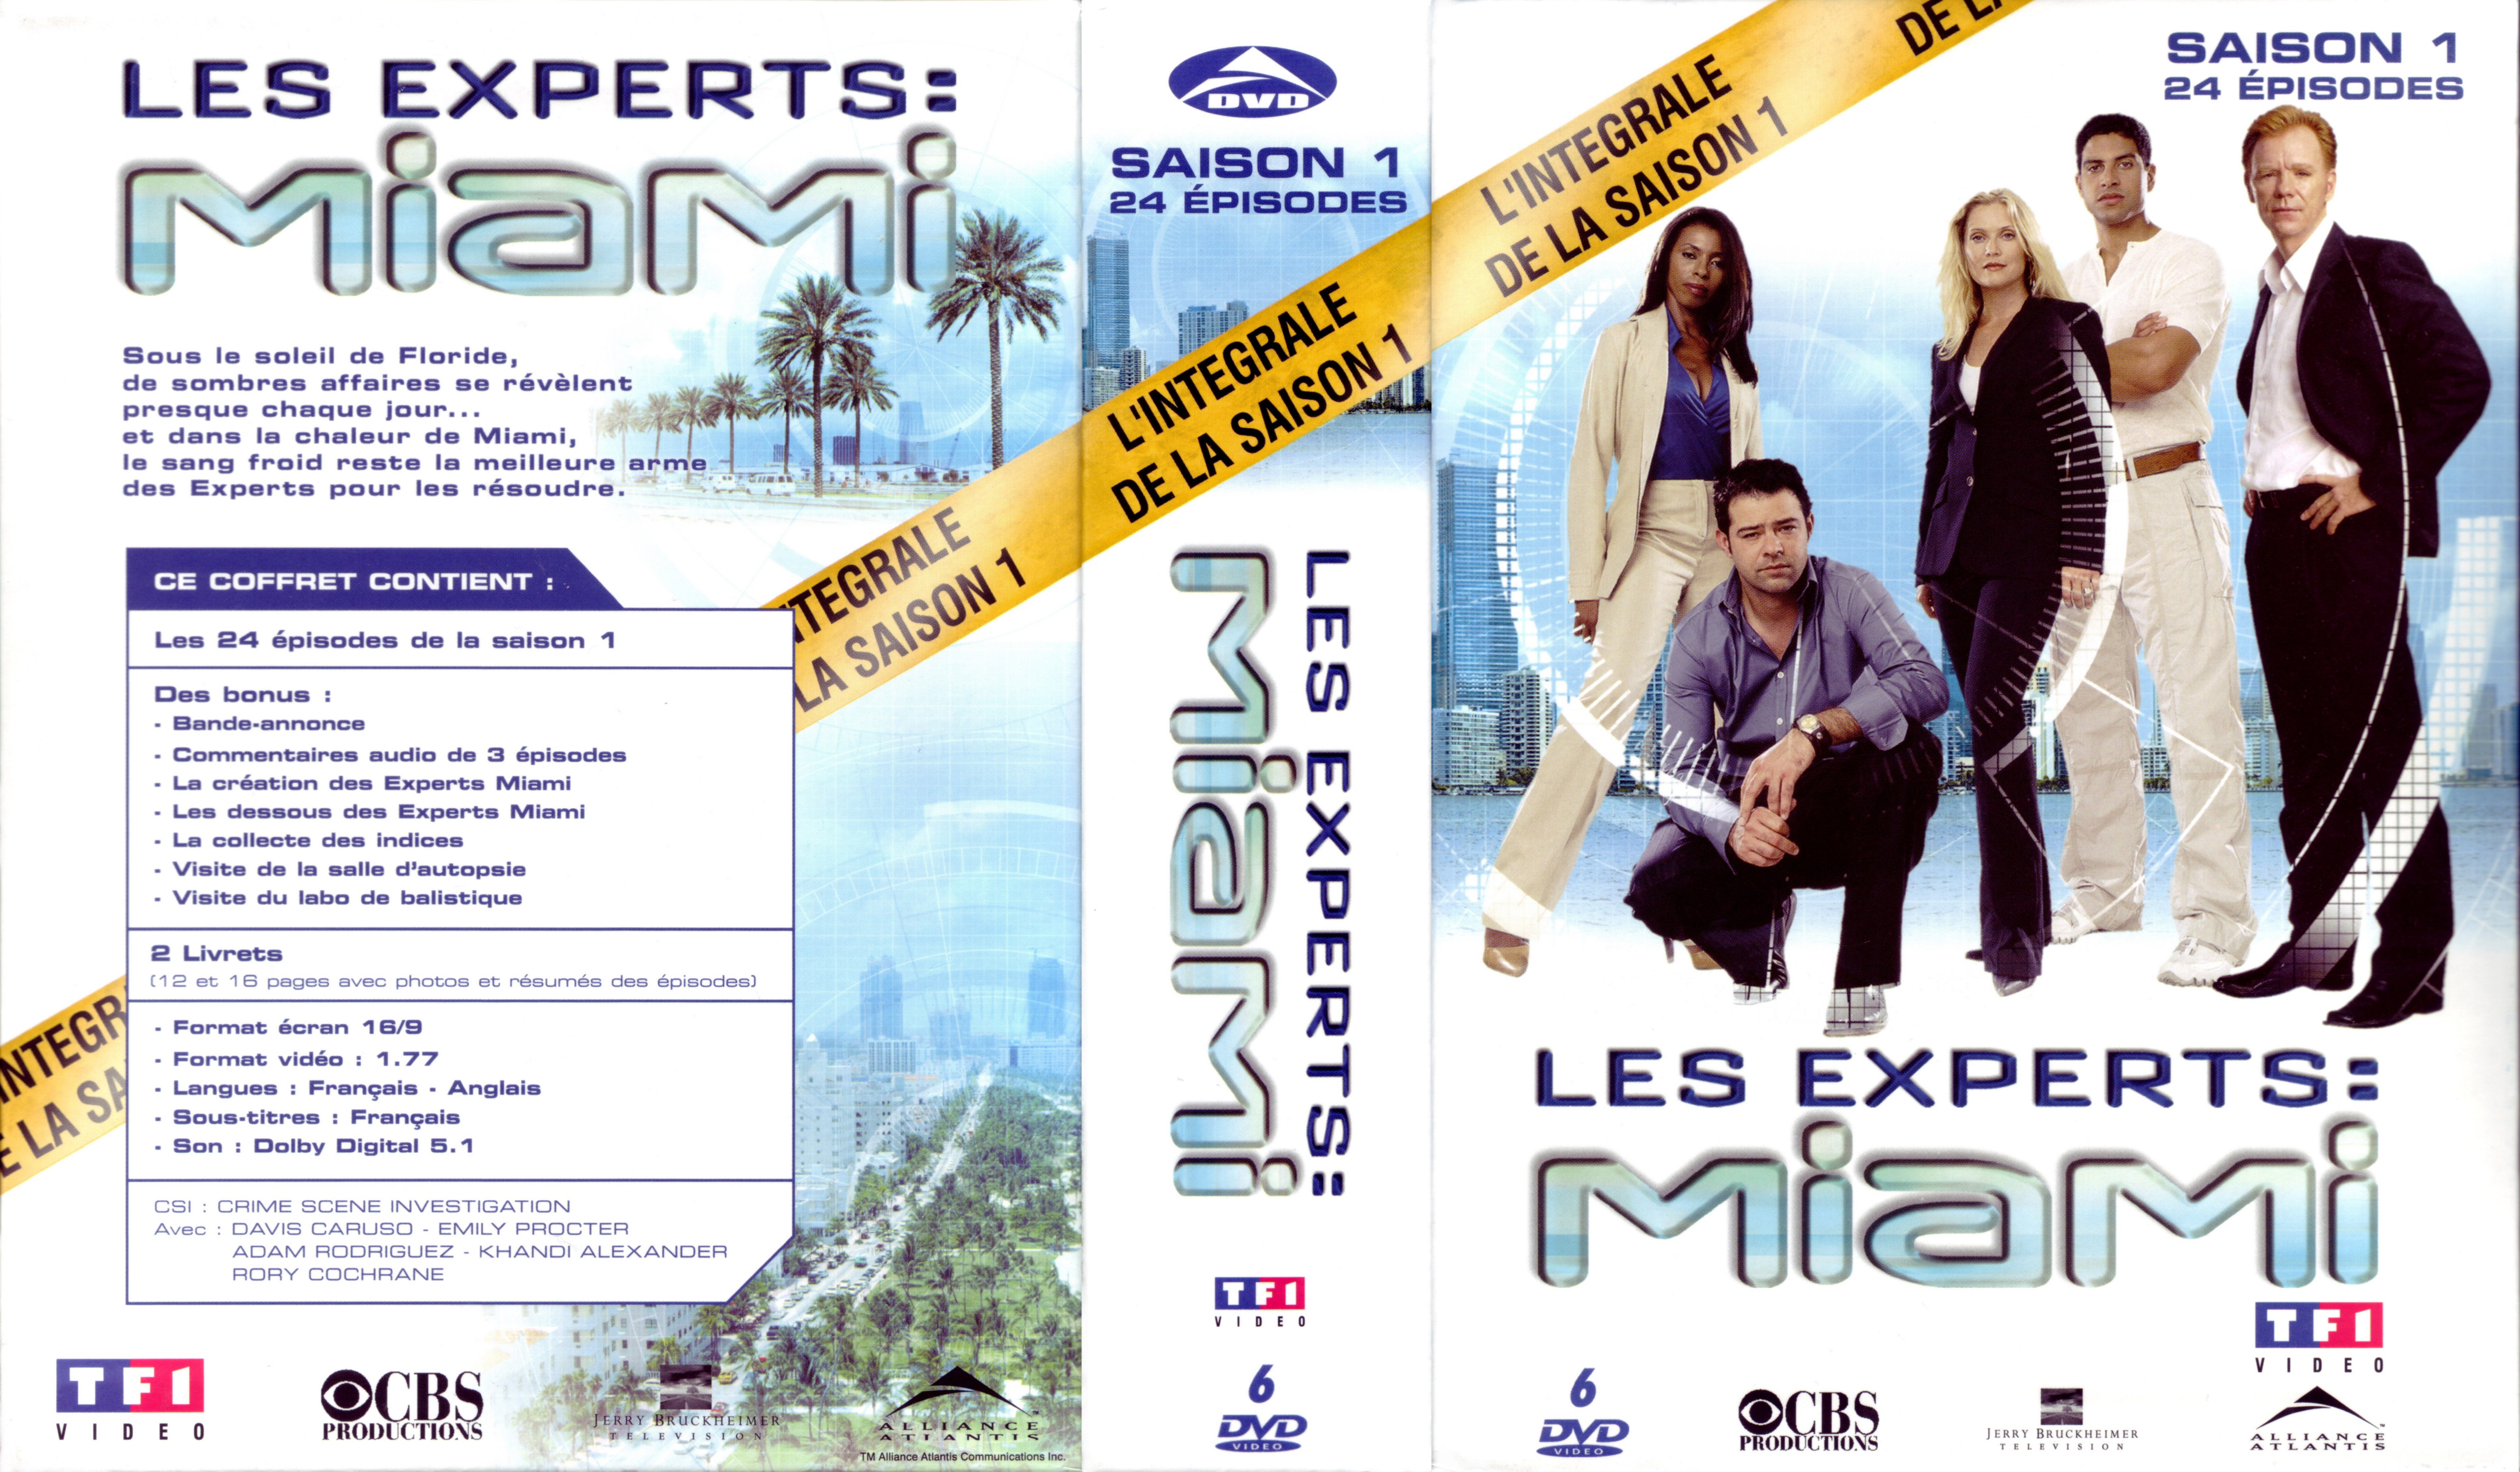 Jaquette DVD Les experts Miami Saison 1 COFFRET